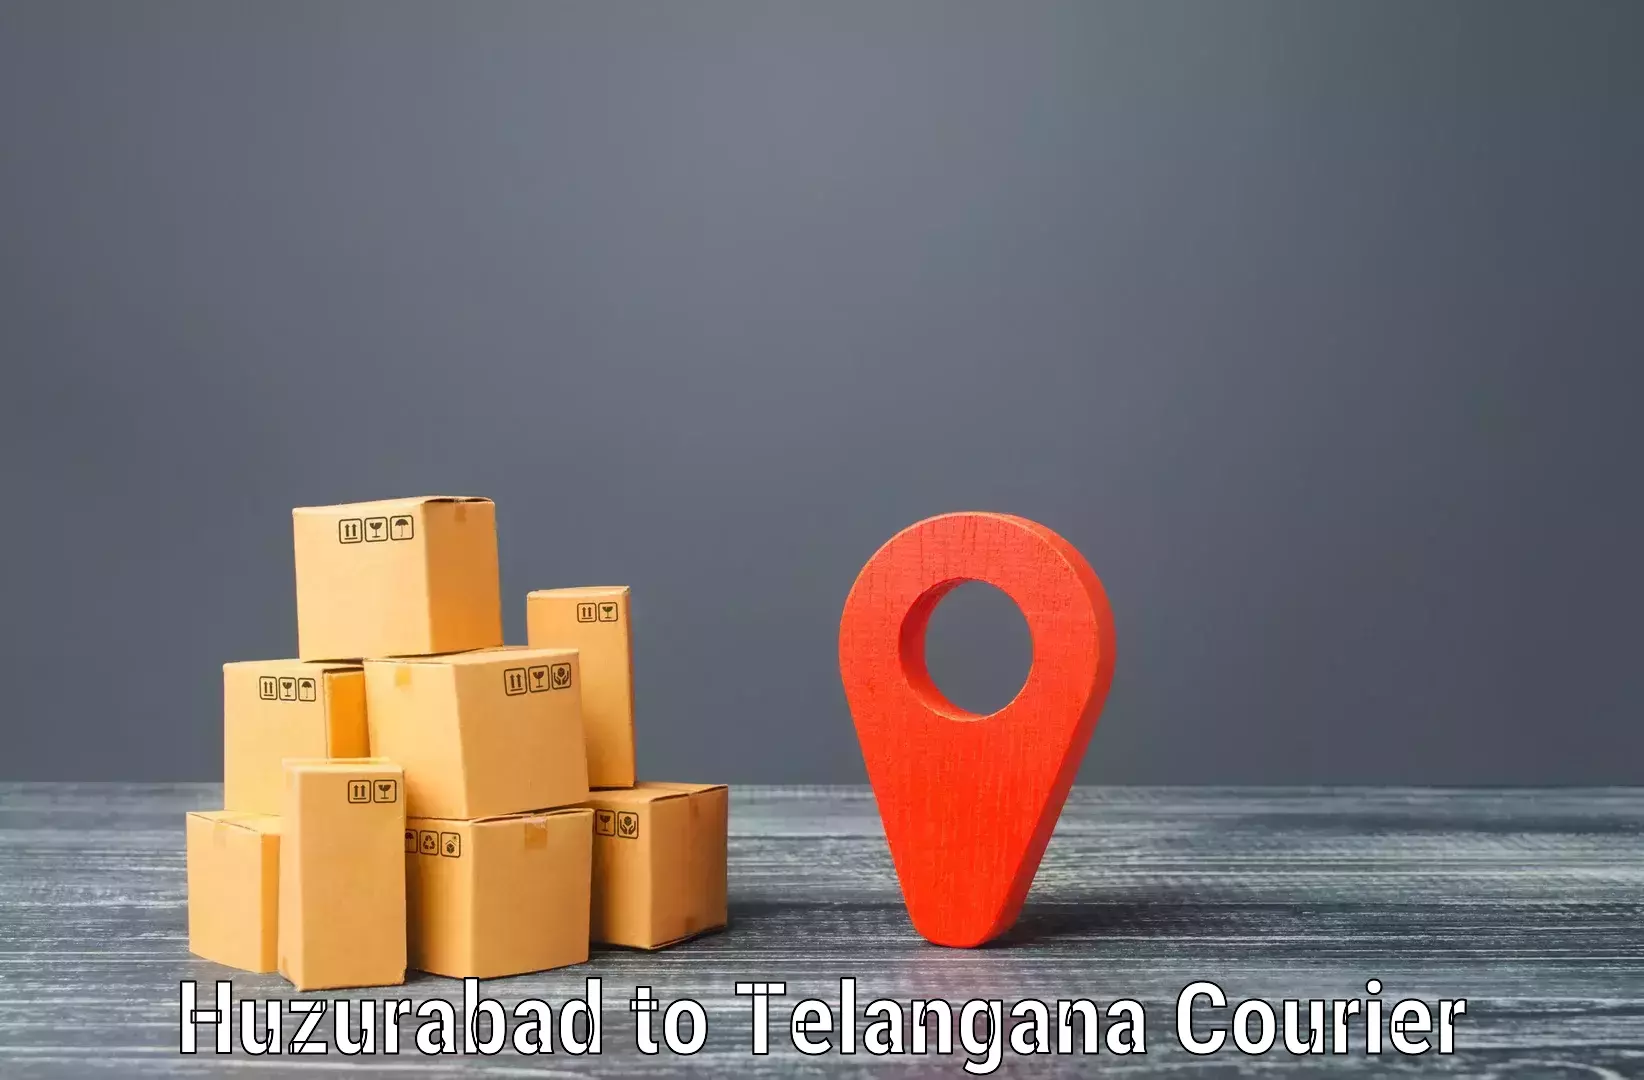 Quick parcel dispatch Huzurabad to Shadnagar